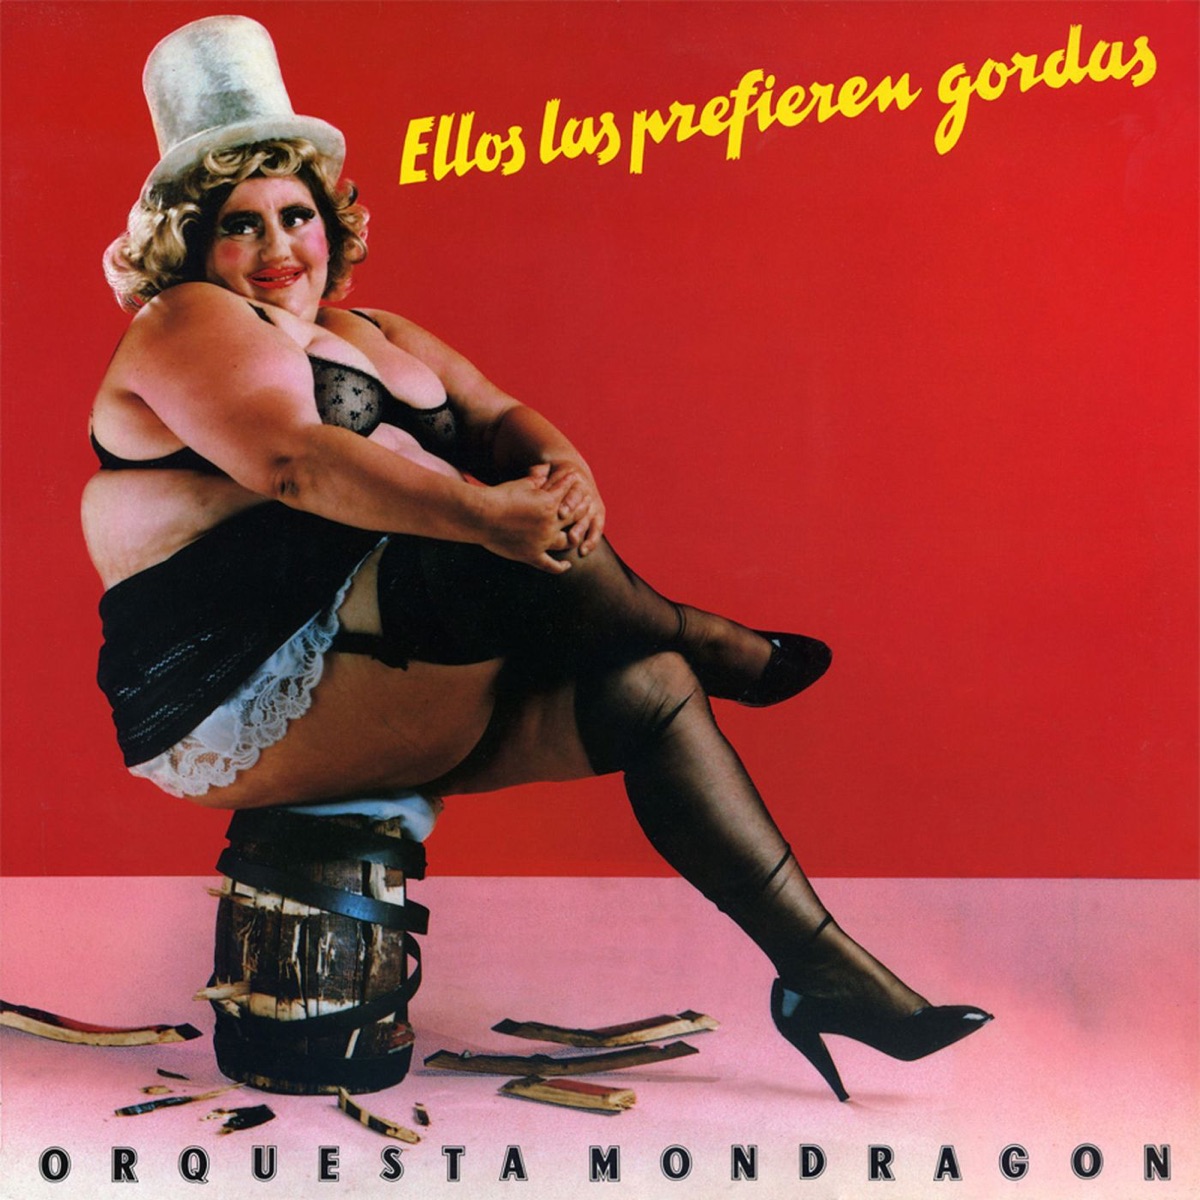 Orquesta Mondragón - Muñeca Hinchable. CD